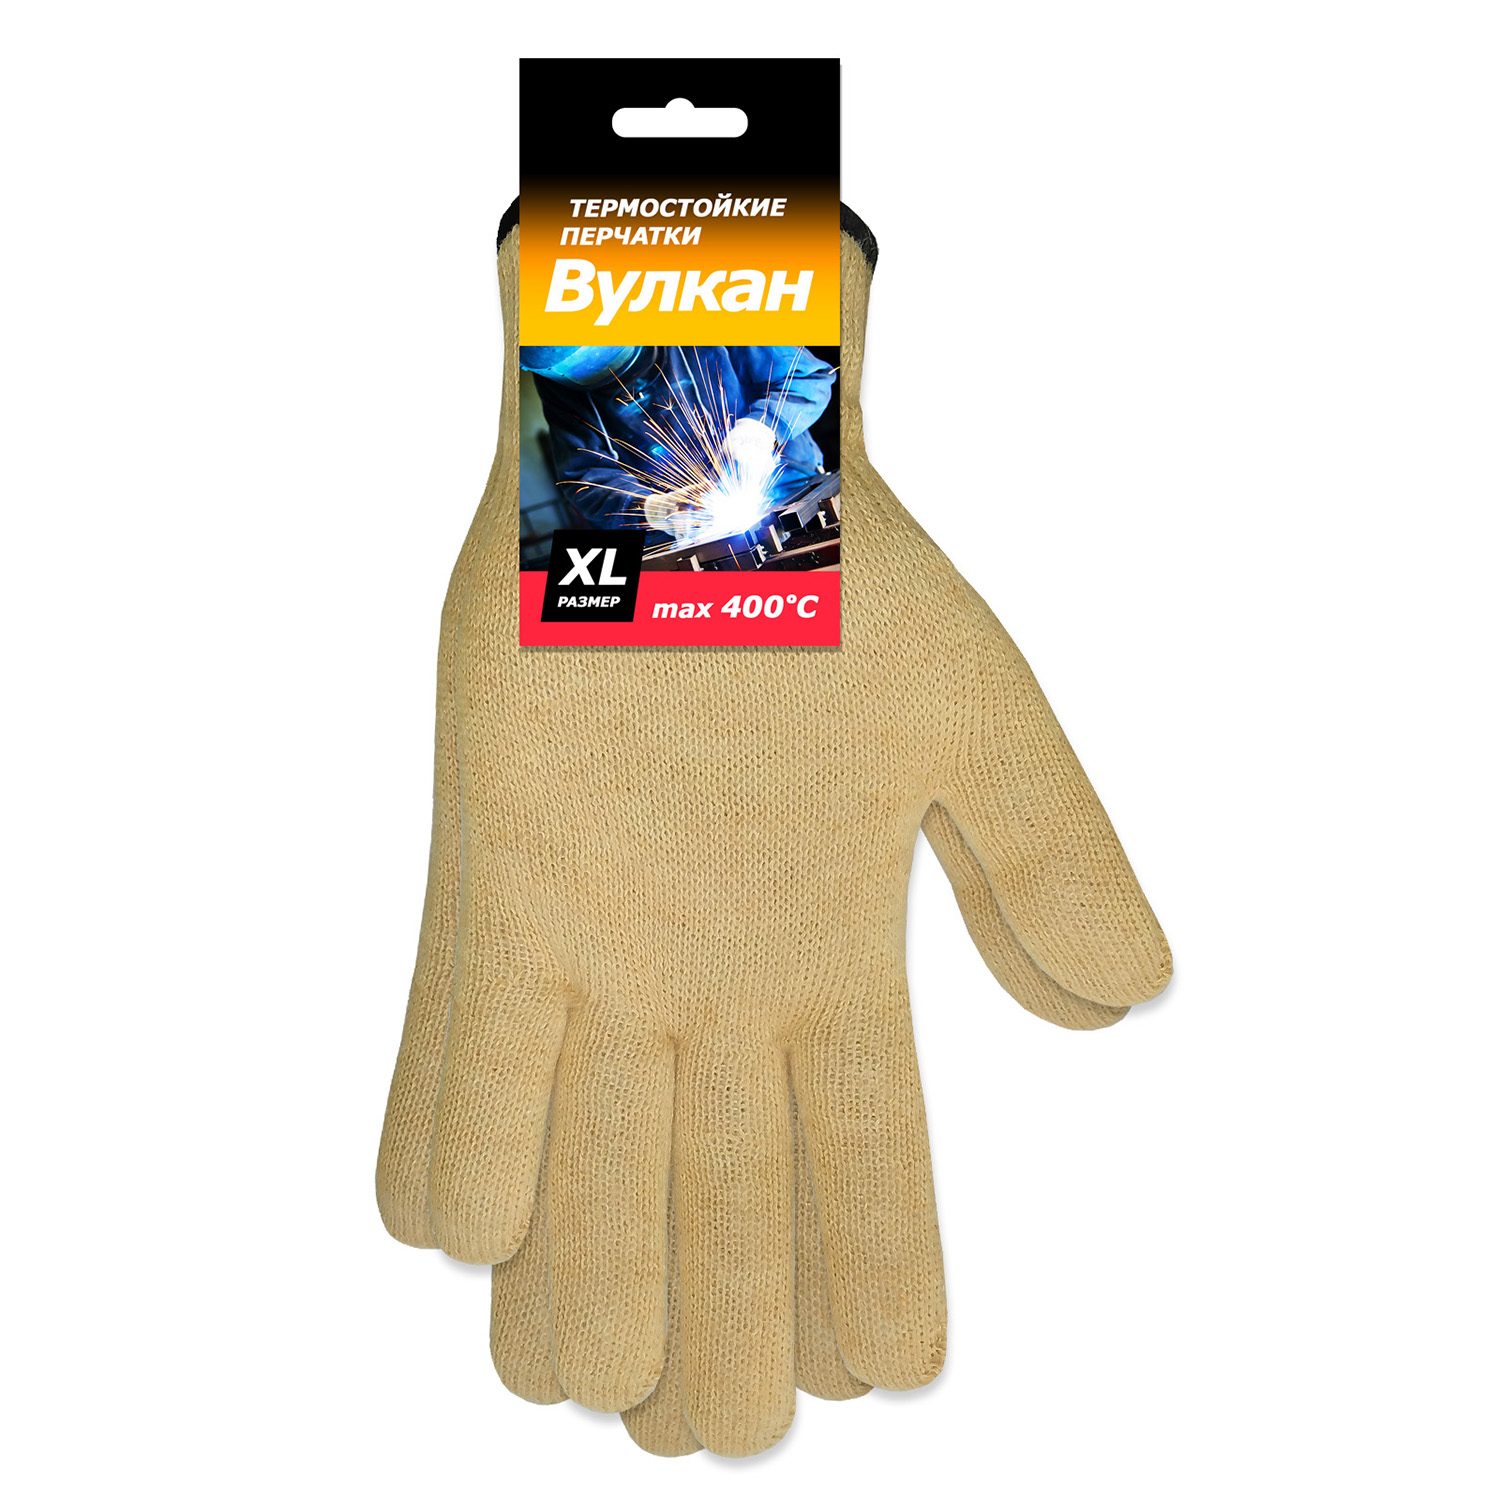 Термостойкие перчатки защита от повышенных температур от 100°С до 400°С